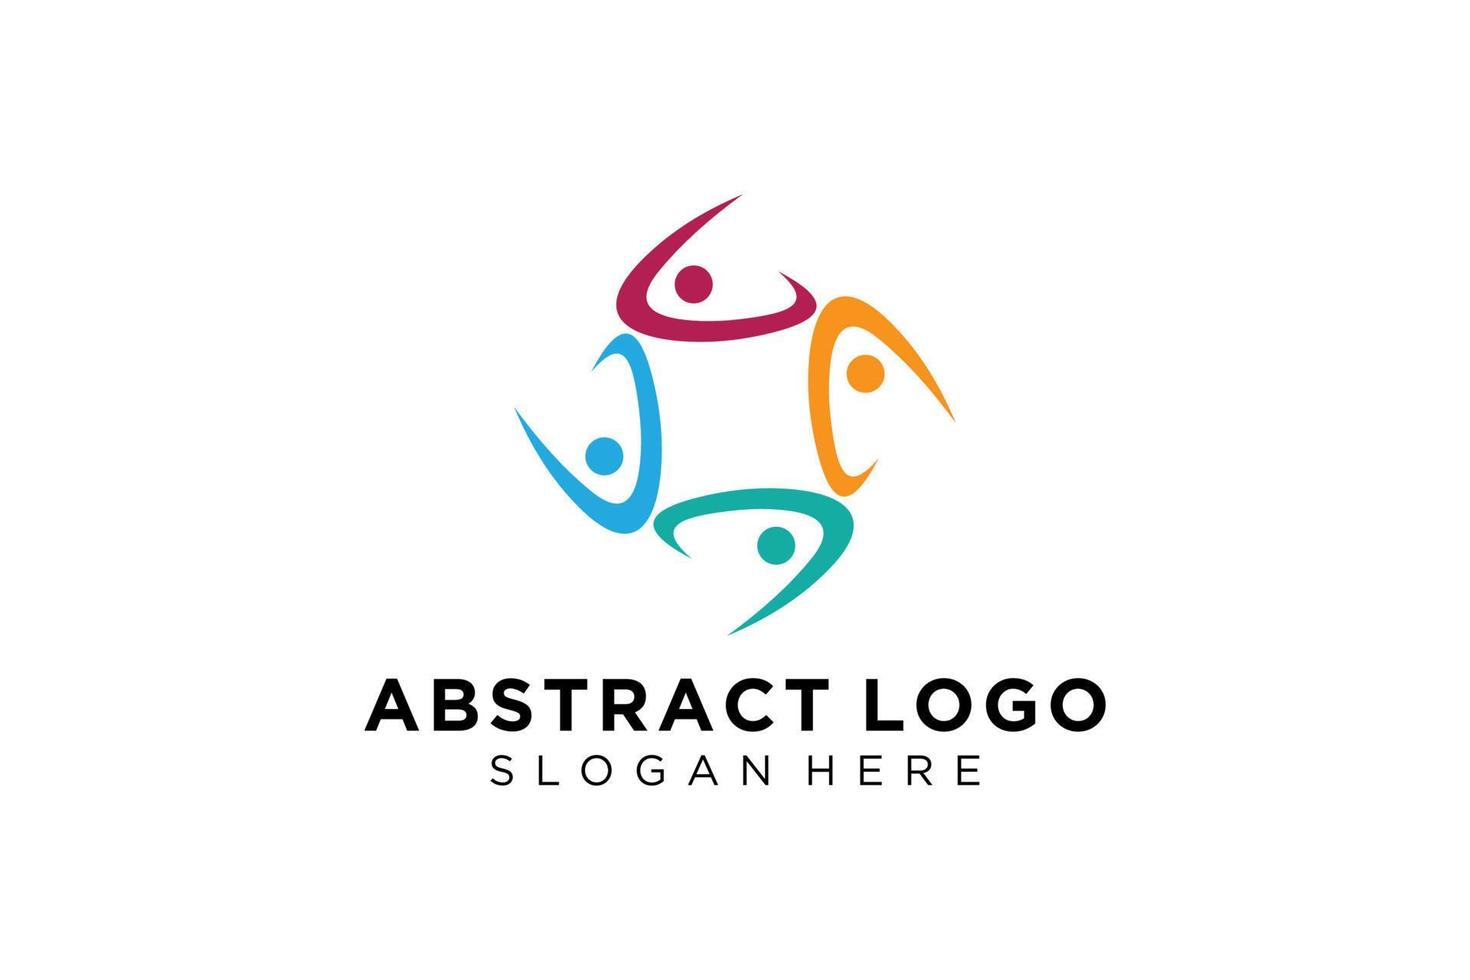 vector abstract mensen en familie logo verzameling, mensen pictogrammen, Gezondheid logo sjabloon, zorg symbool.